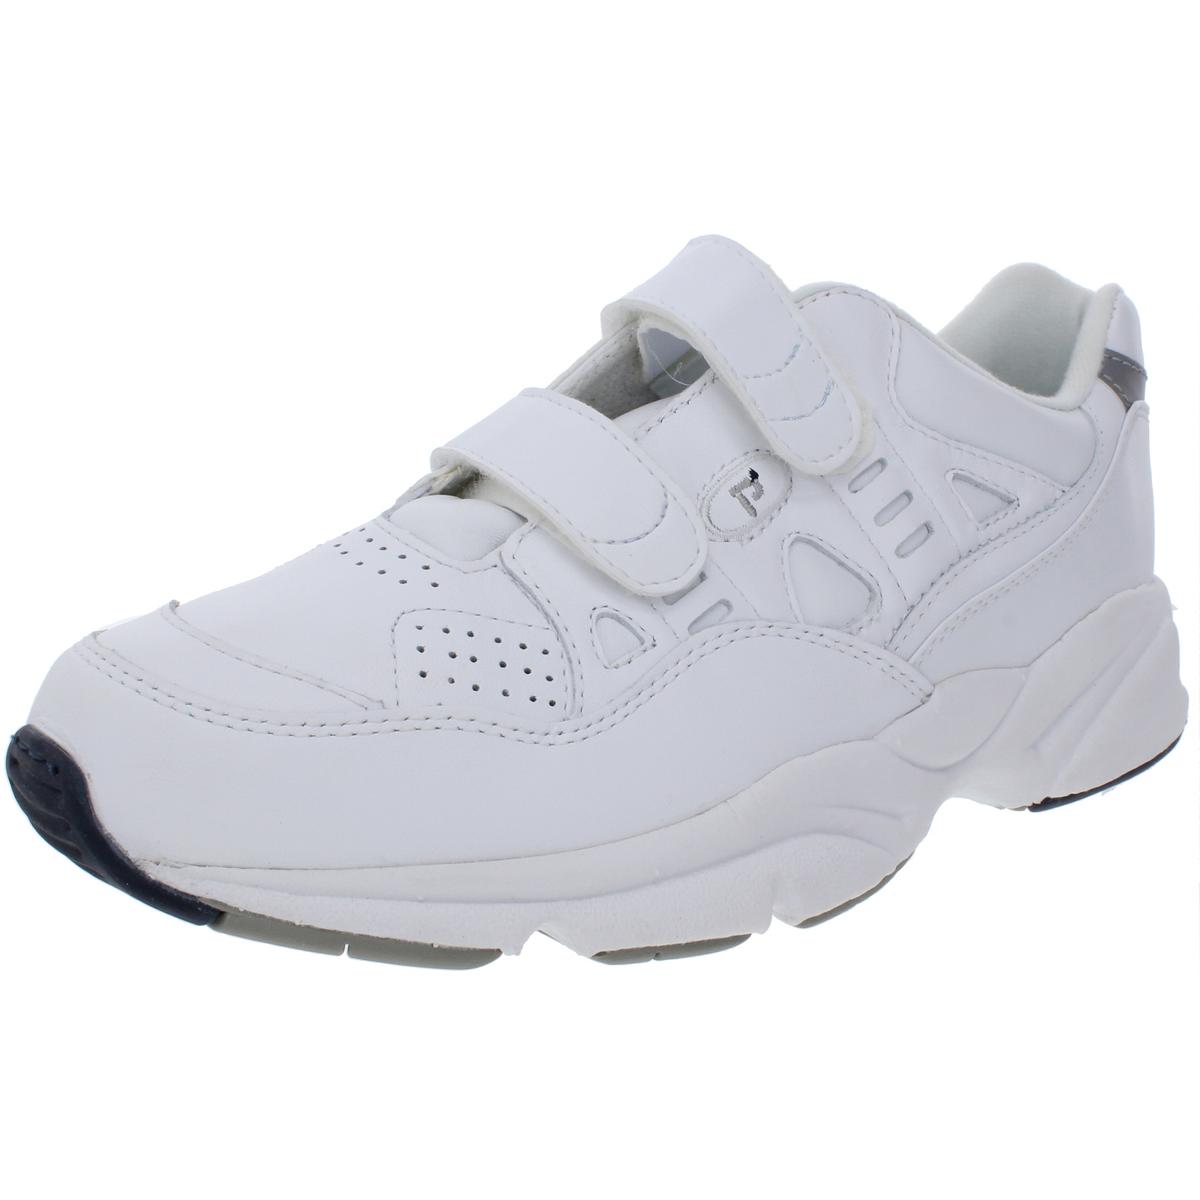 Propet Womens Stability Walker White Walking Shoes Sneakers 10 9 BHFO ...